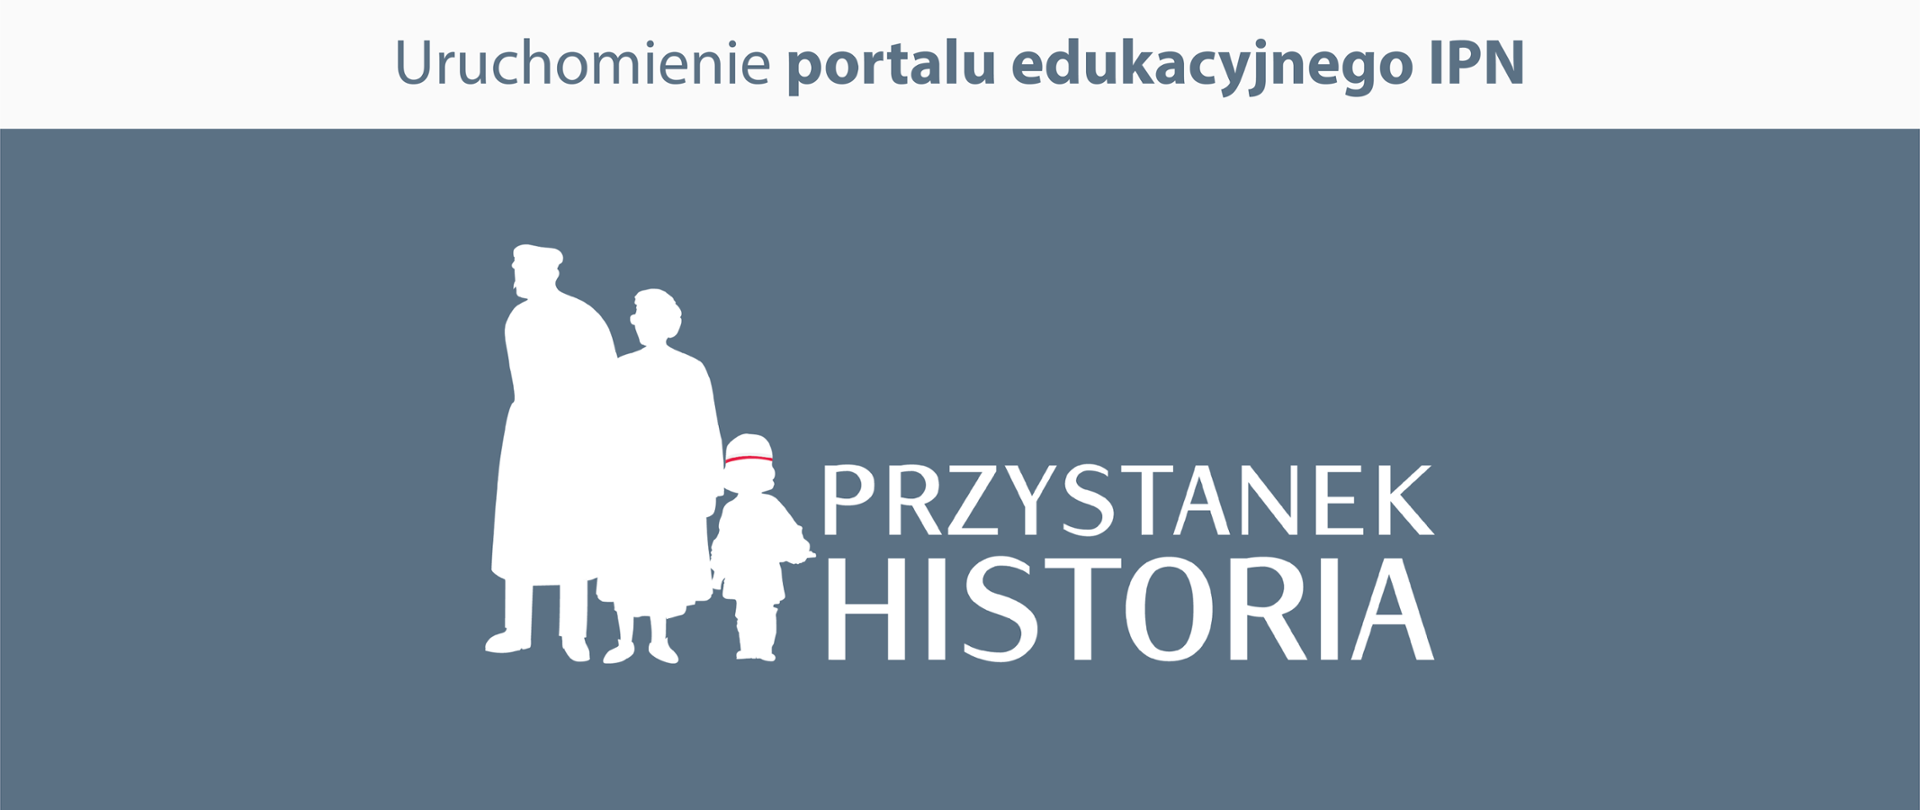 Grafika z logotypem portalu edukacyjnego "przystanek historia" – założonego przez Instytut Pamięci Narodowej – informująca o jego uruchomieniu .